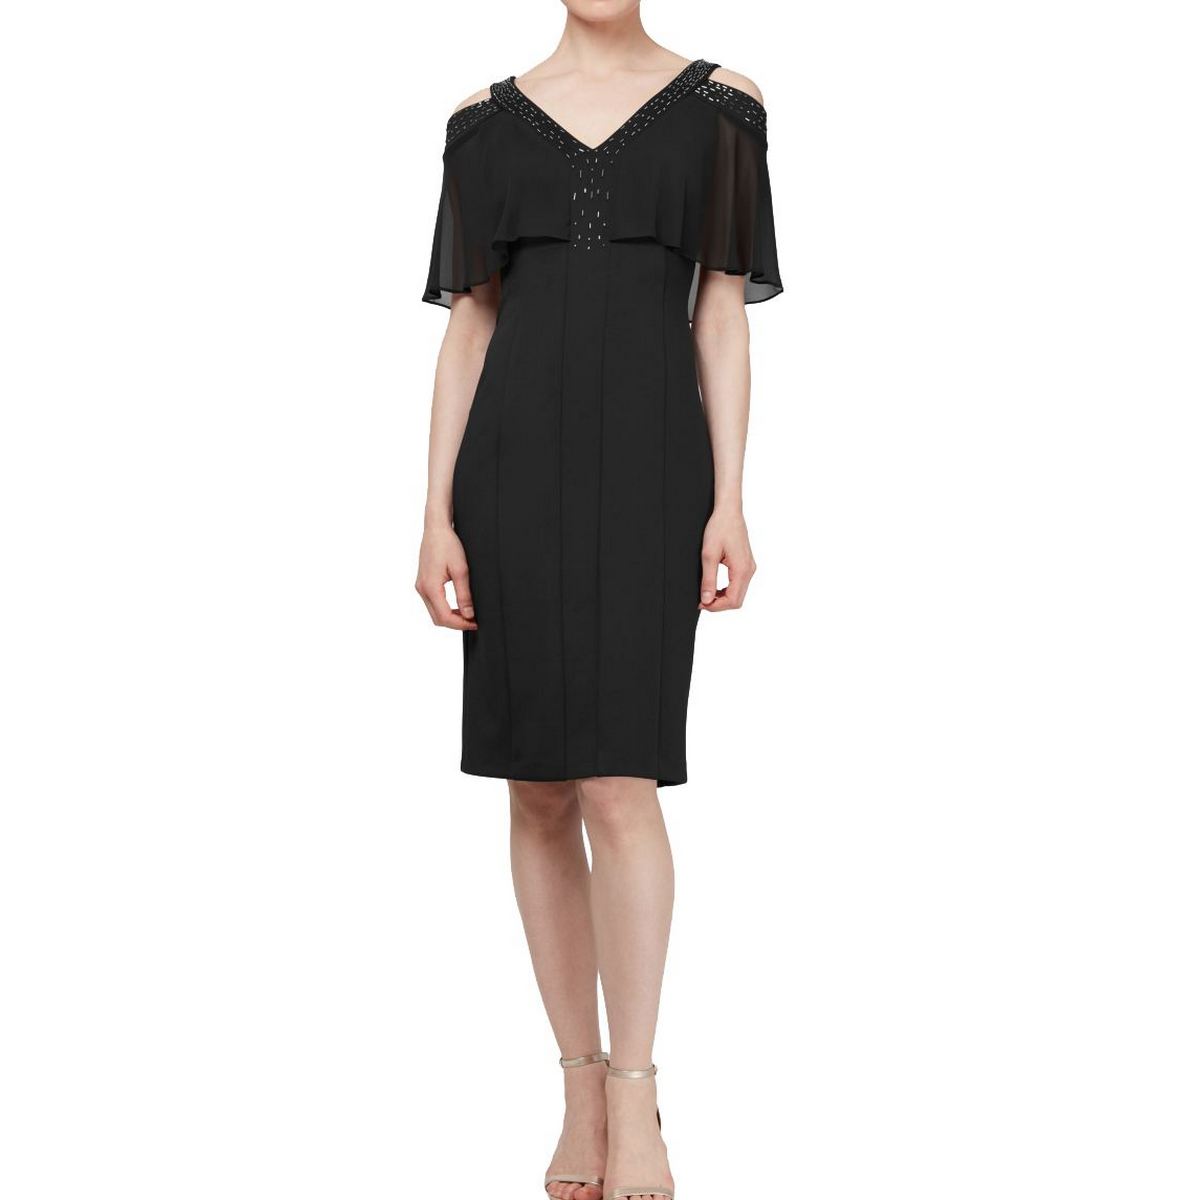 SLNY NEW Women's Black Cold-shoulder V-neck Embellished Sheath Dress 18 ...